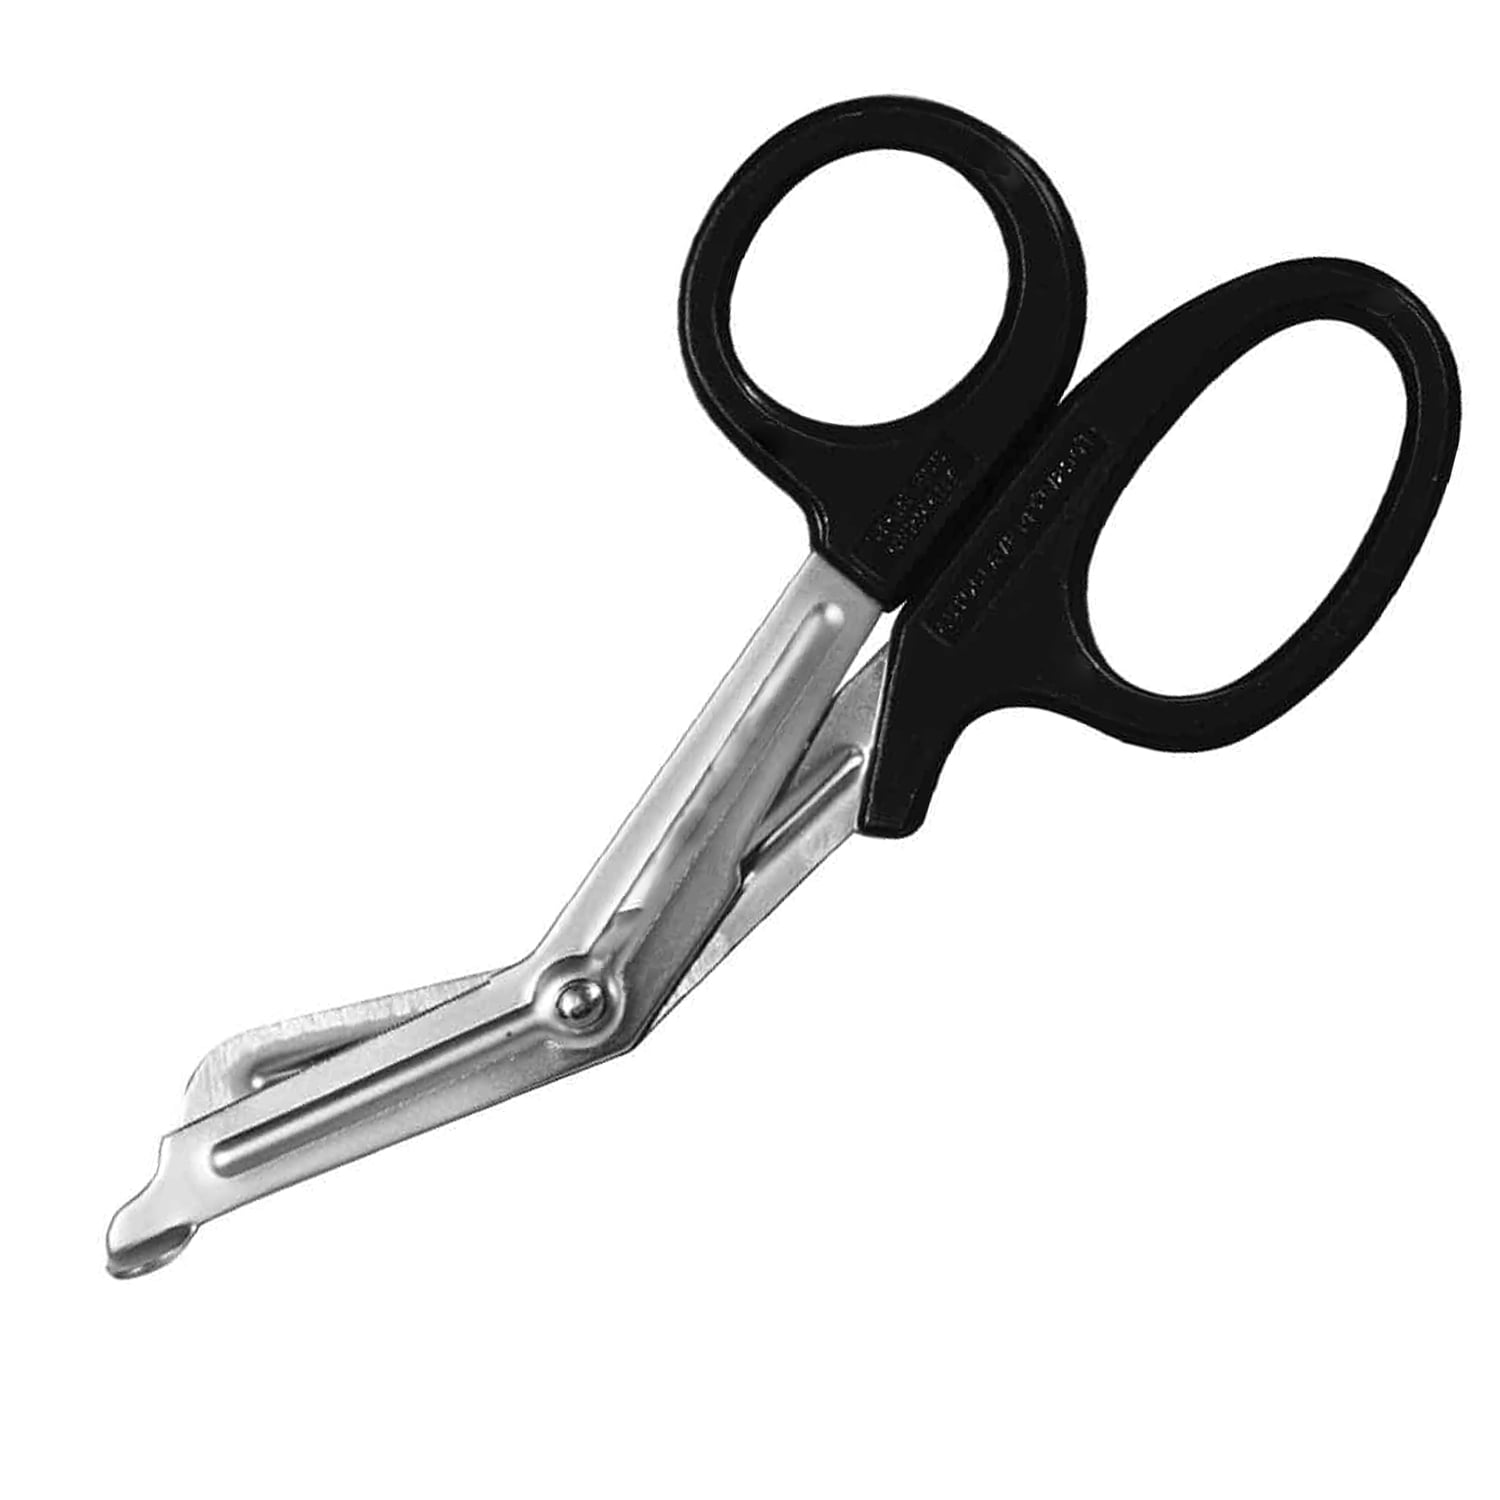 Operating Scissors, Std, Straight, Sharp/Blunt, 4.25 inch, German, Von Klaus